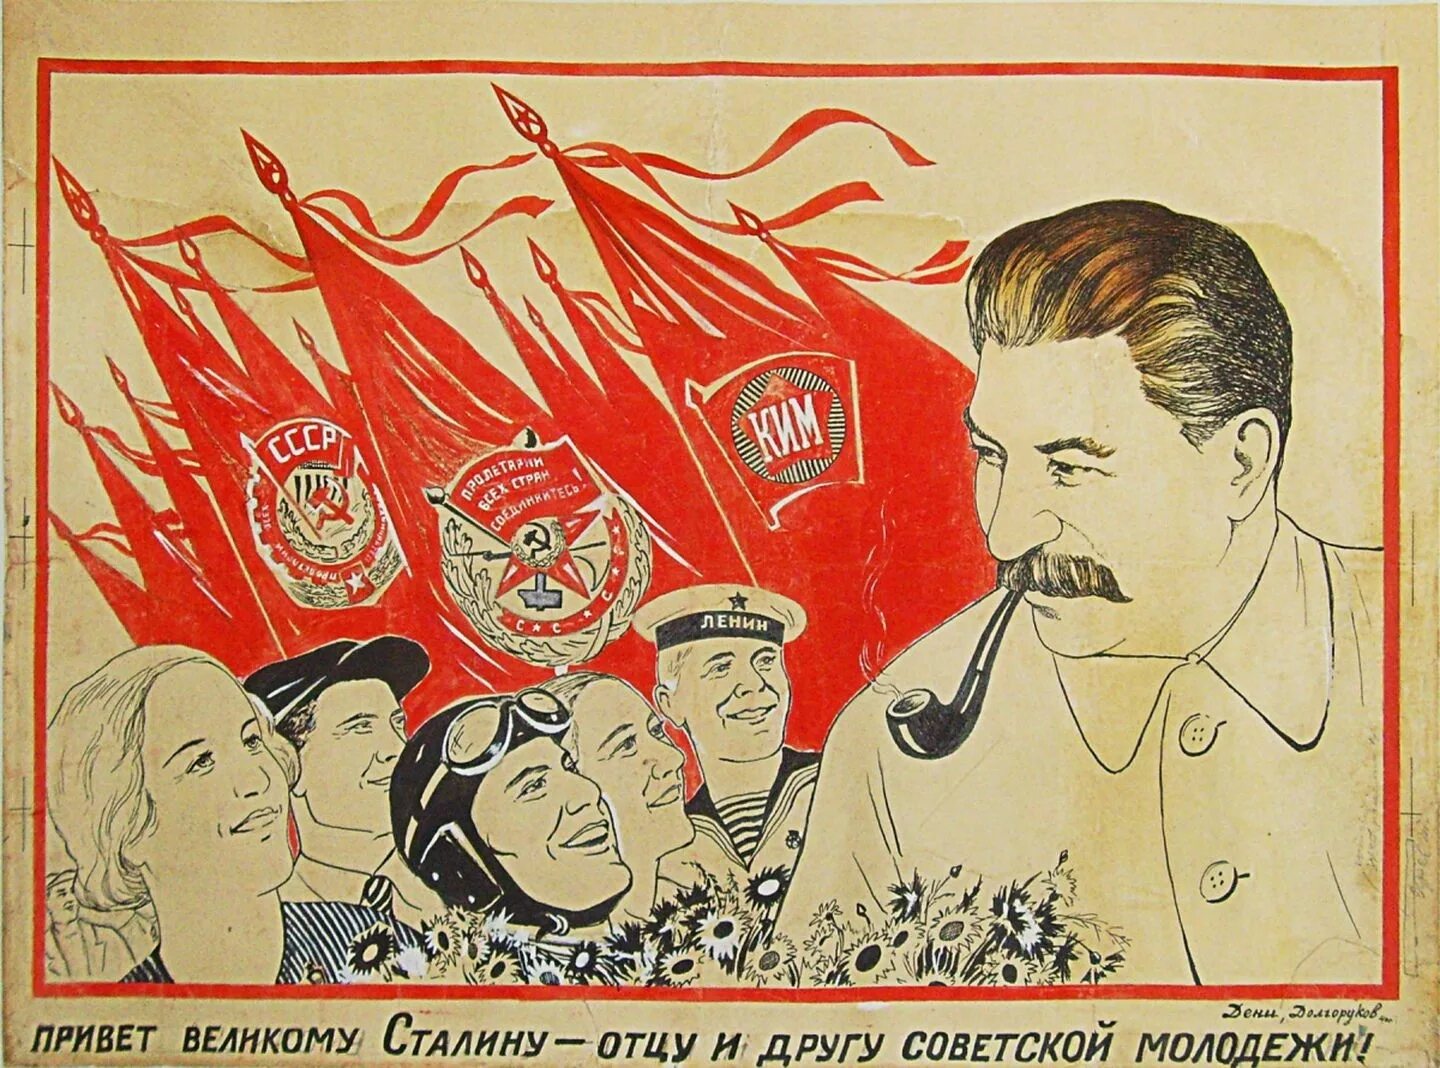 Плакат привет великому Сталину. Сталин культ личности плакаты. Плакат со Сталиным 1940. Культ личности Сталина в СССР плакаты.